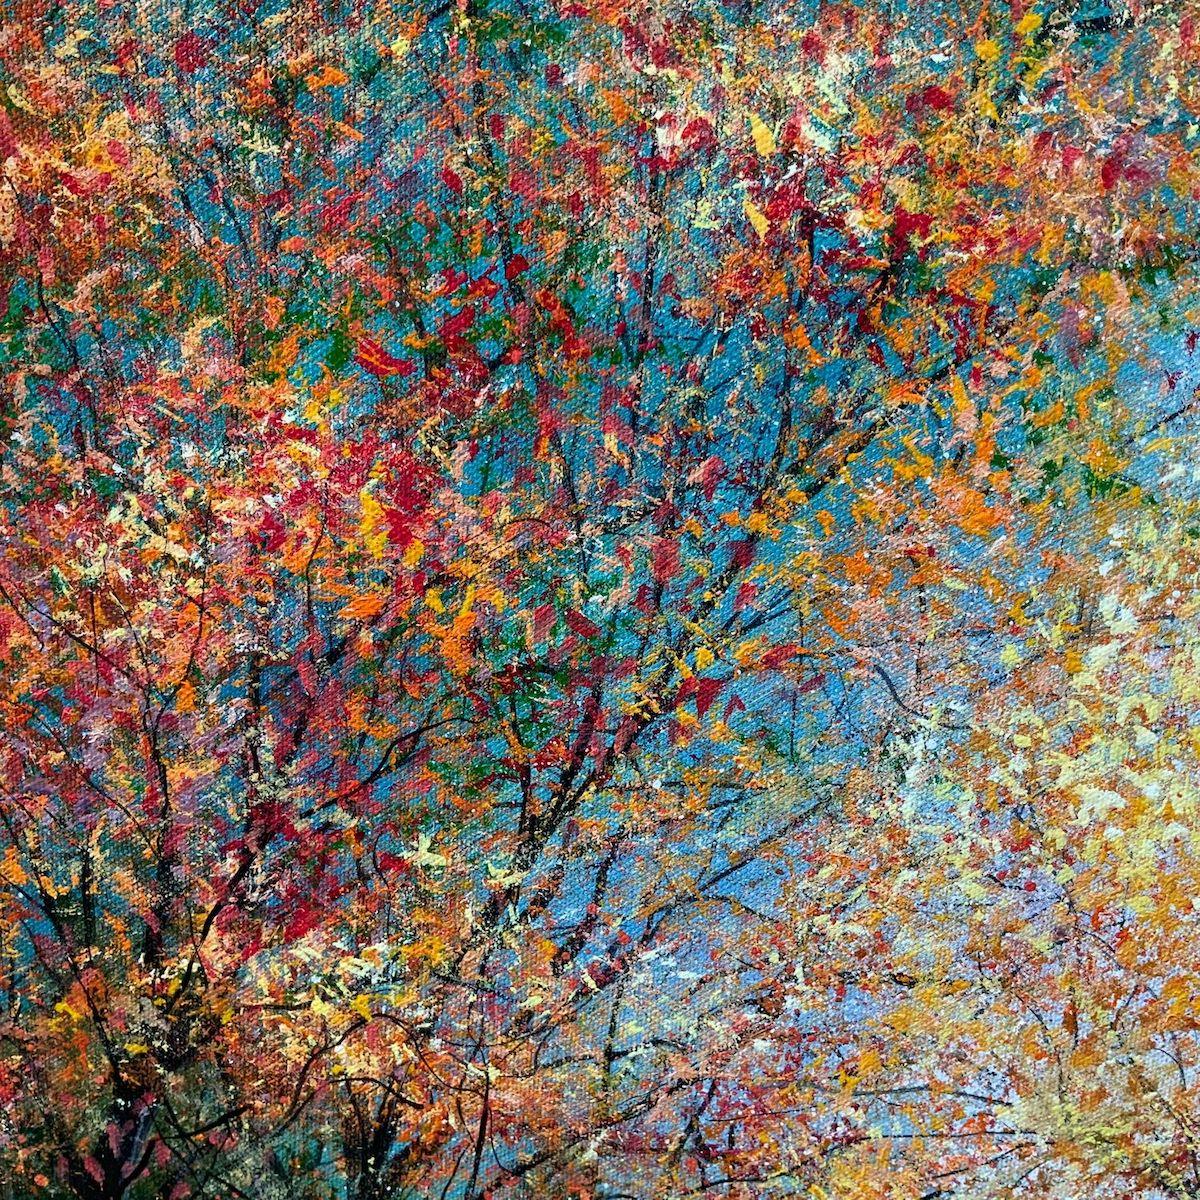 Autumn Blaze Fairy Glen par Jan Rogers, paysage contemporain, art forestier - Gris Abstract Painting par Jan Rogers 